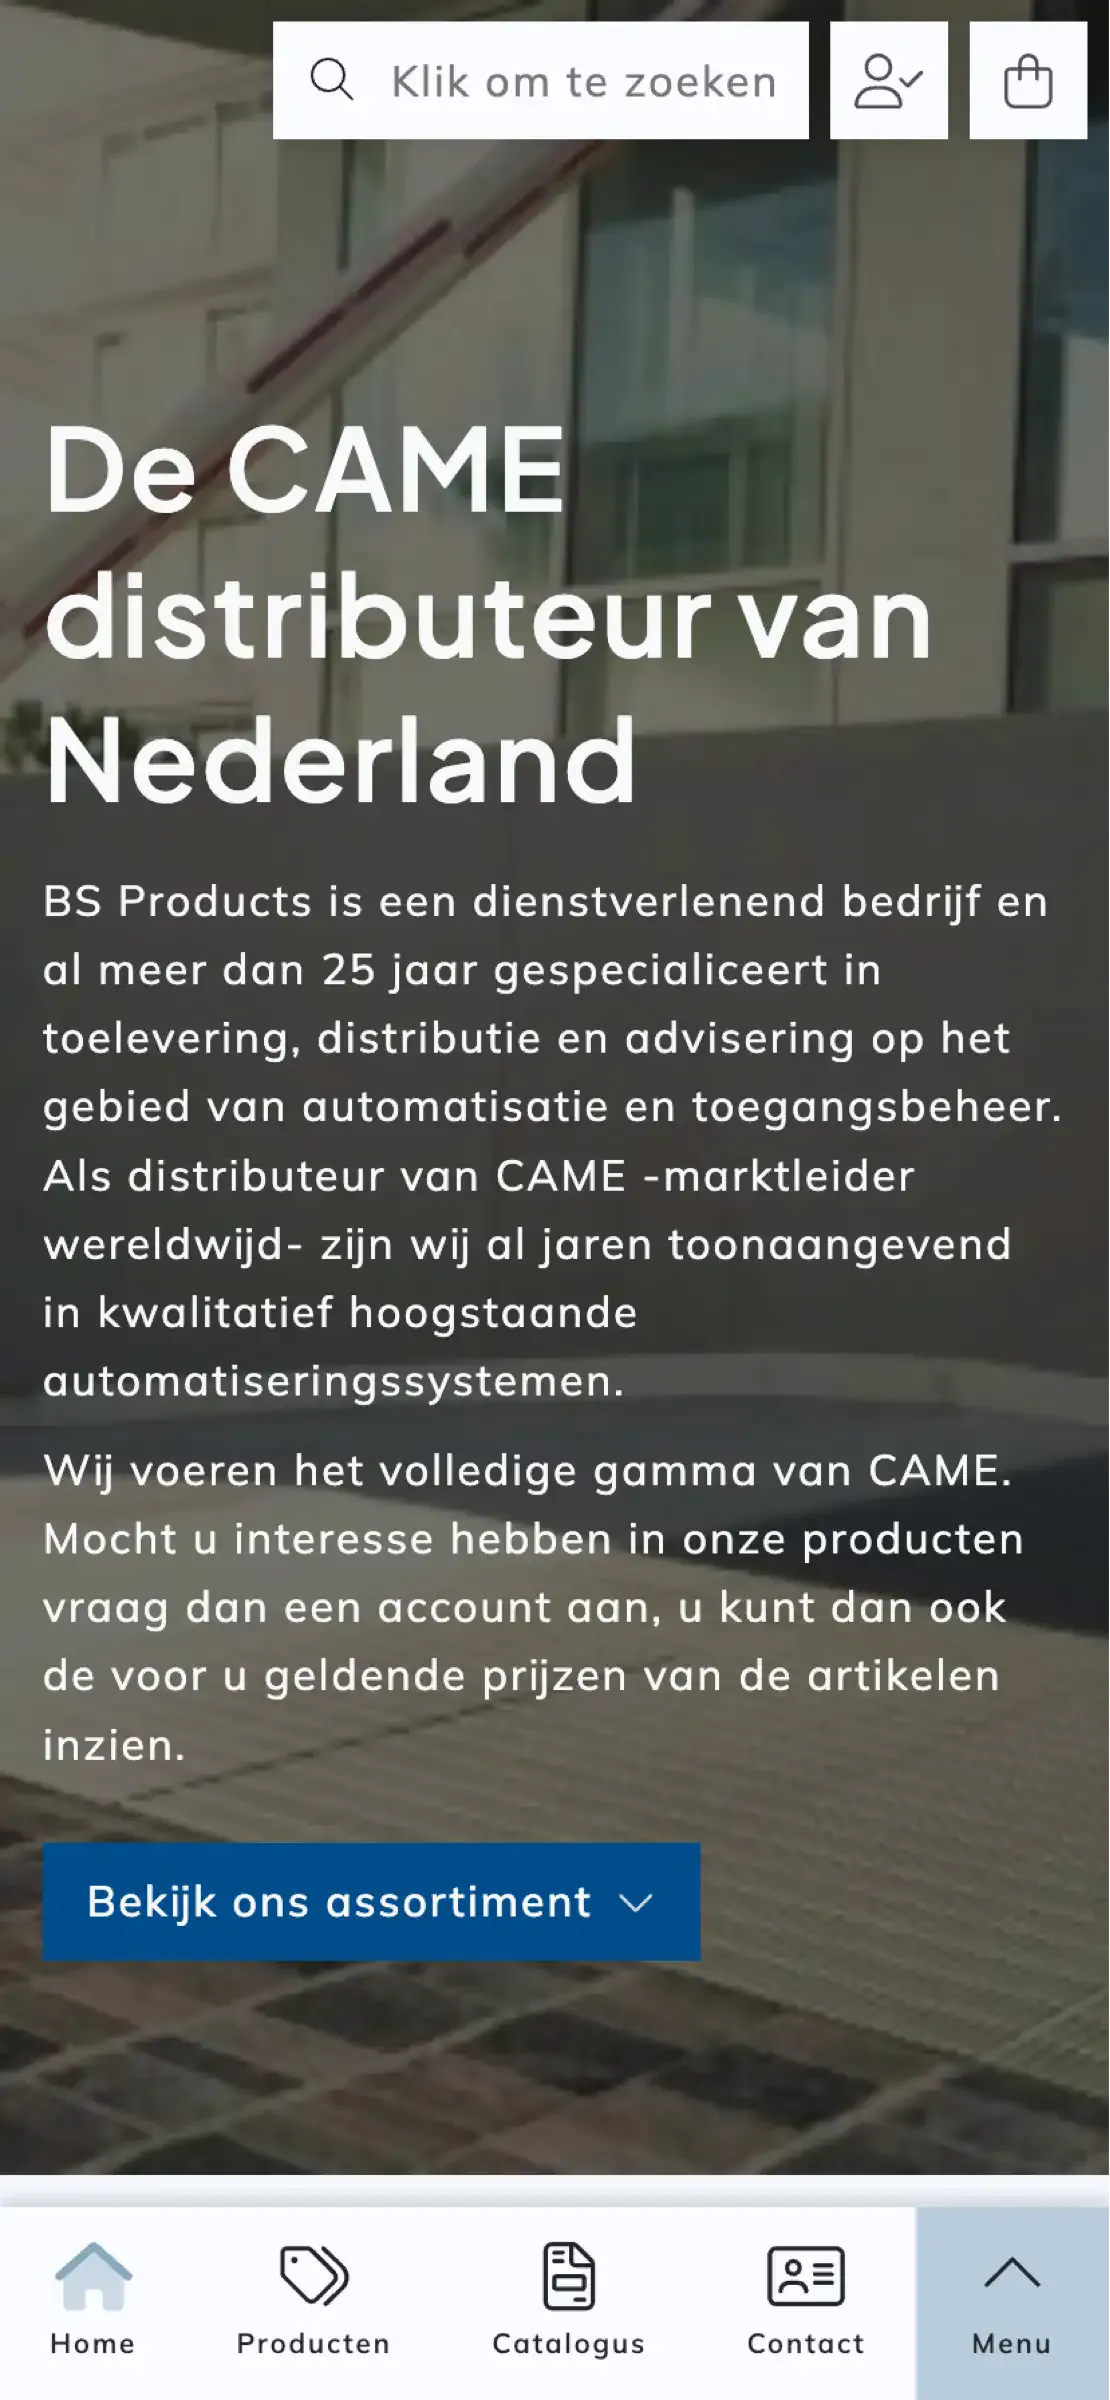 De homepagina van BS Products